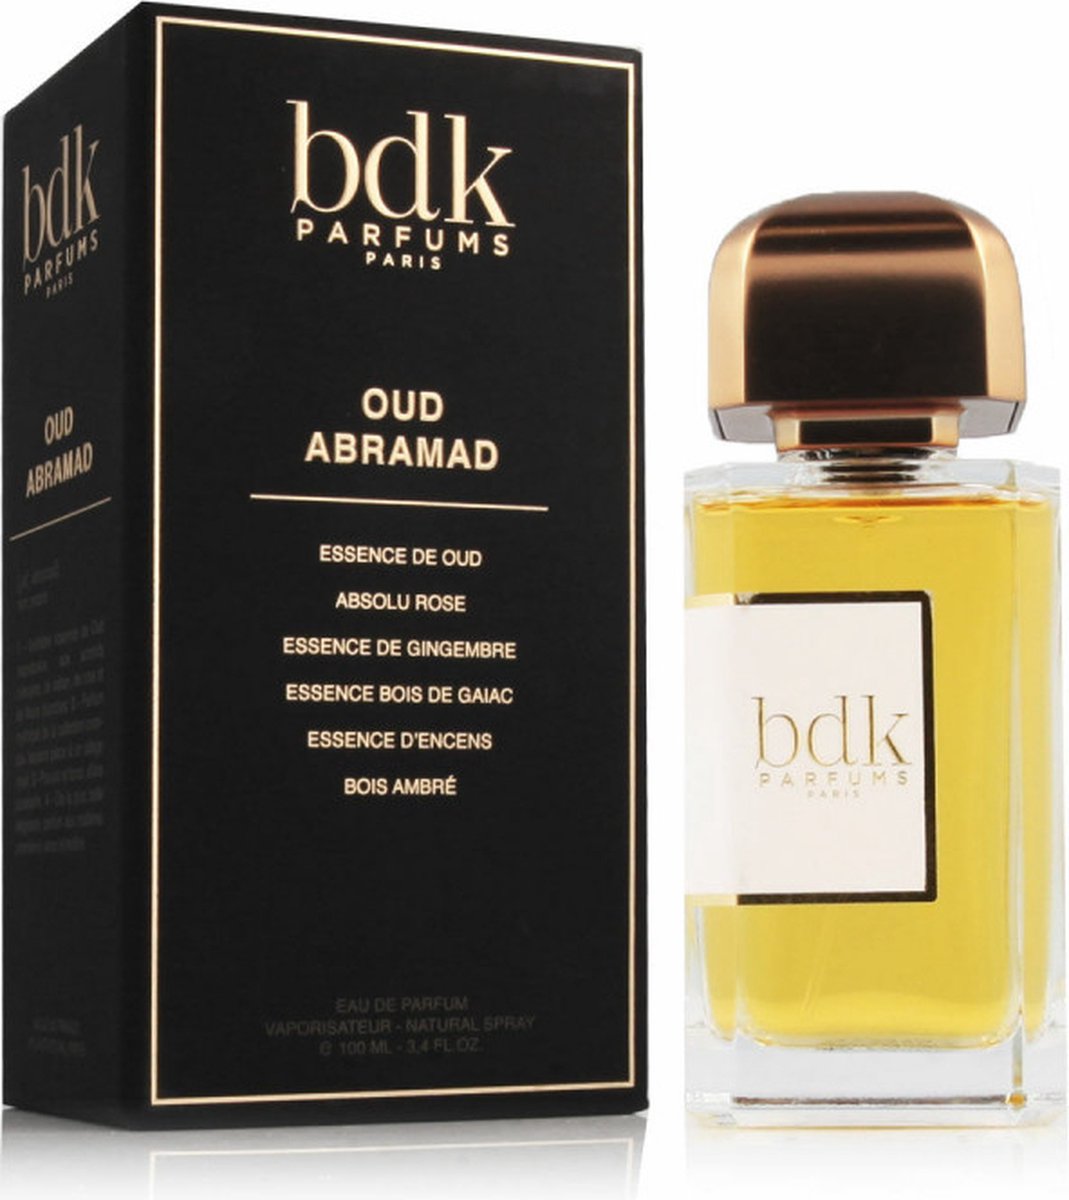 BDK Perfumes - Oud Abramad Eau de Parfum - 100 ml - Unisex